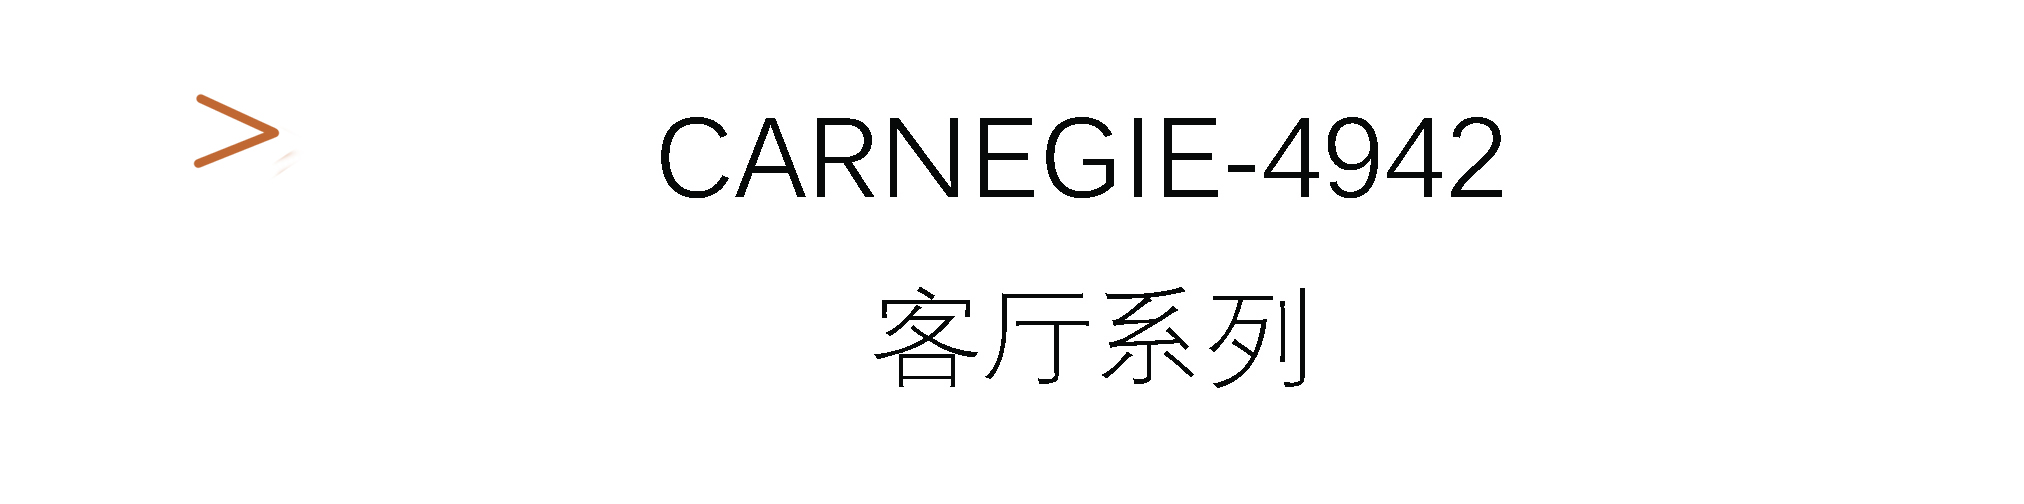 Carnegie-4942